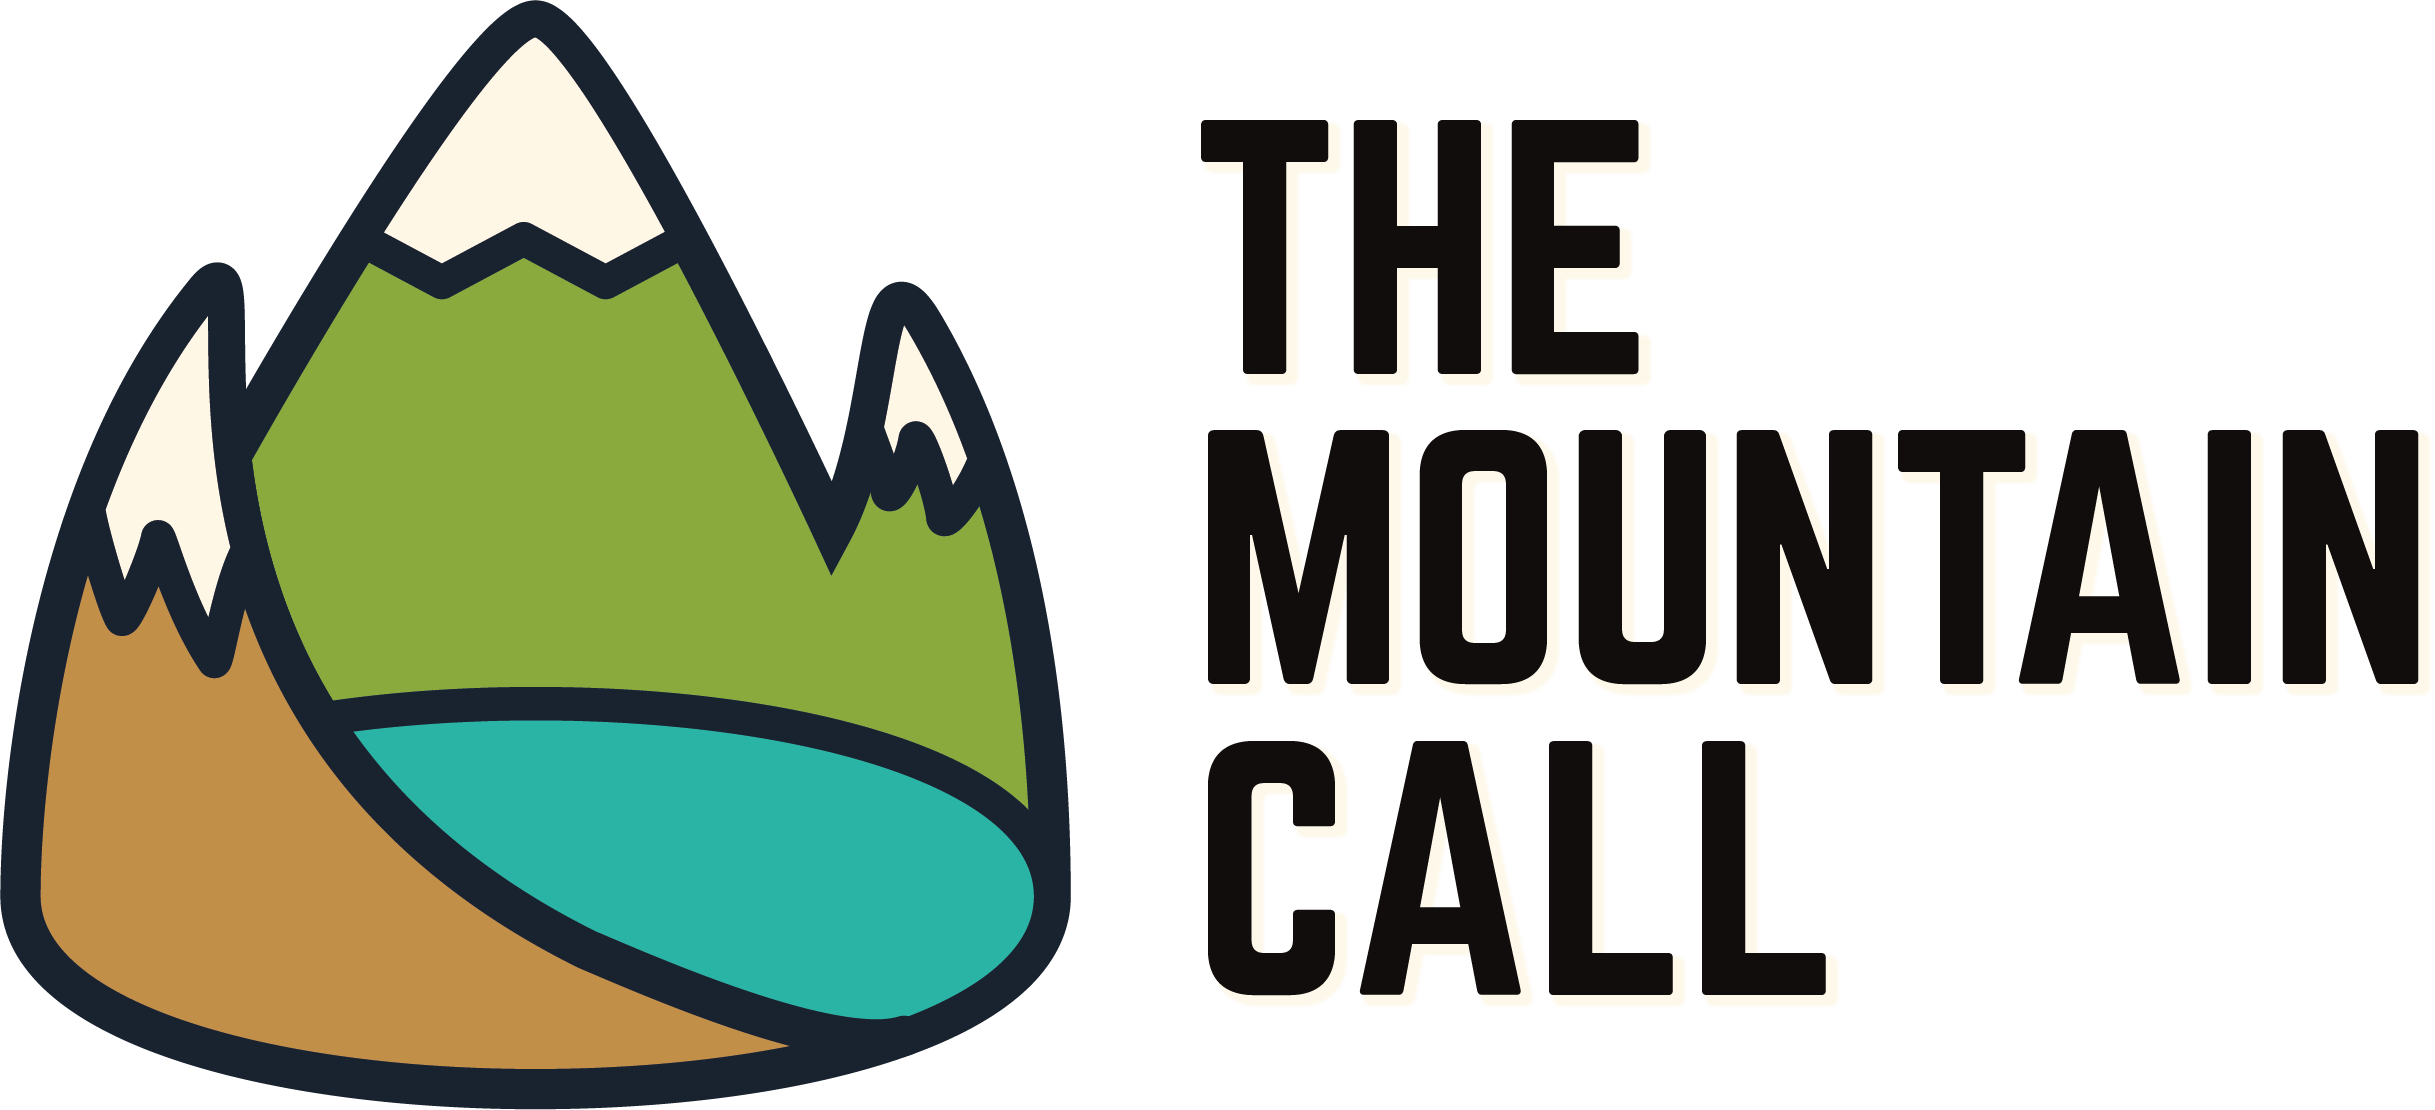 Themountaincall - Escape Game Austin Logo (2435x1110)